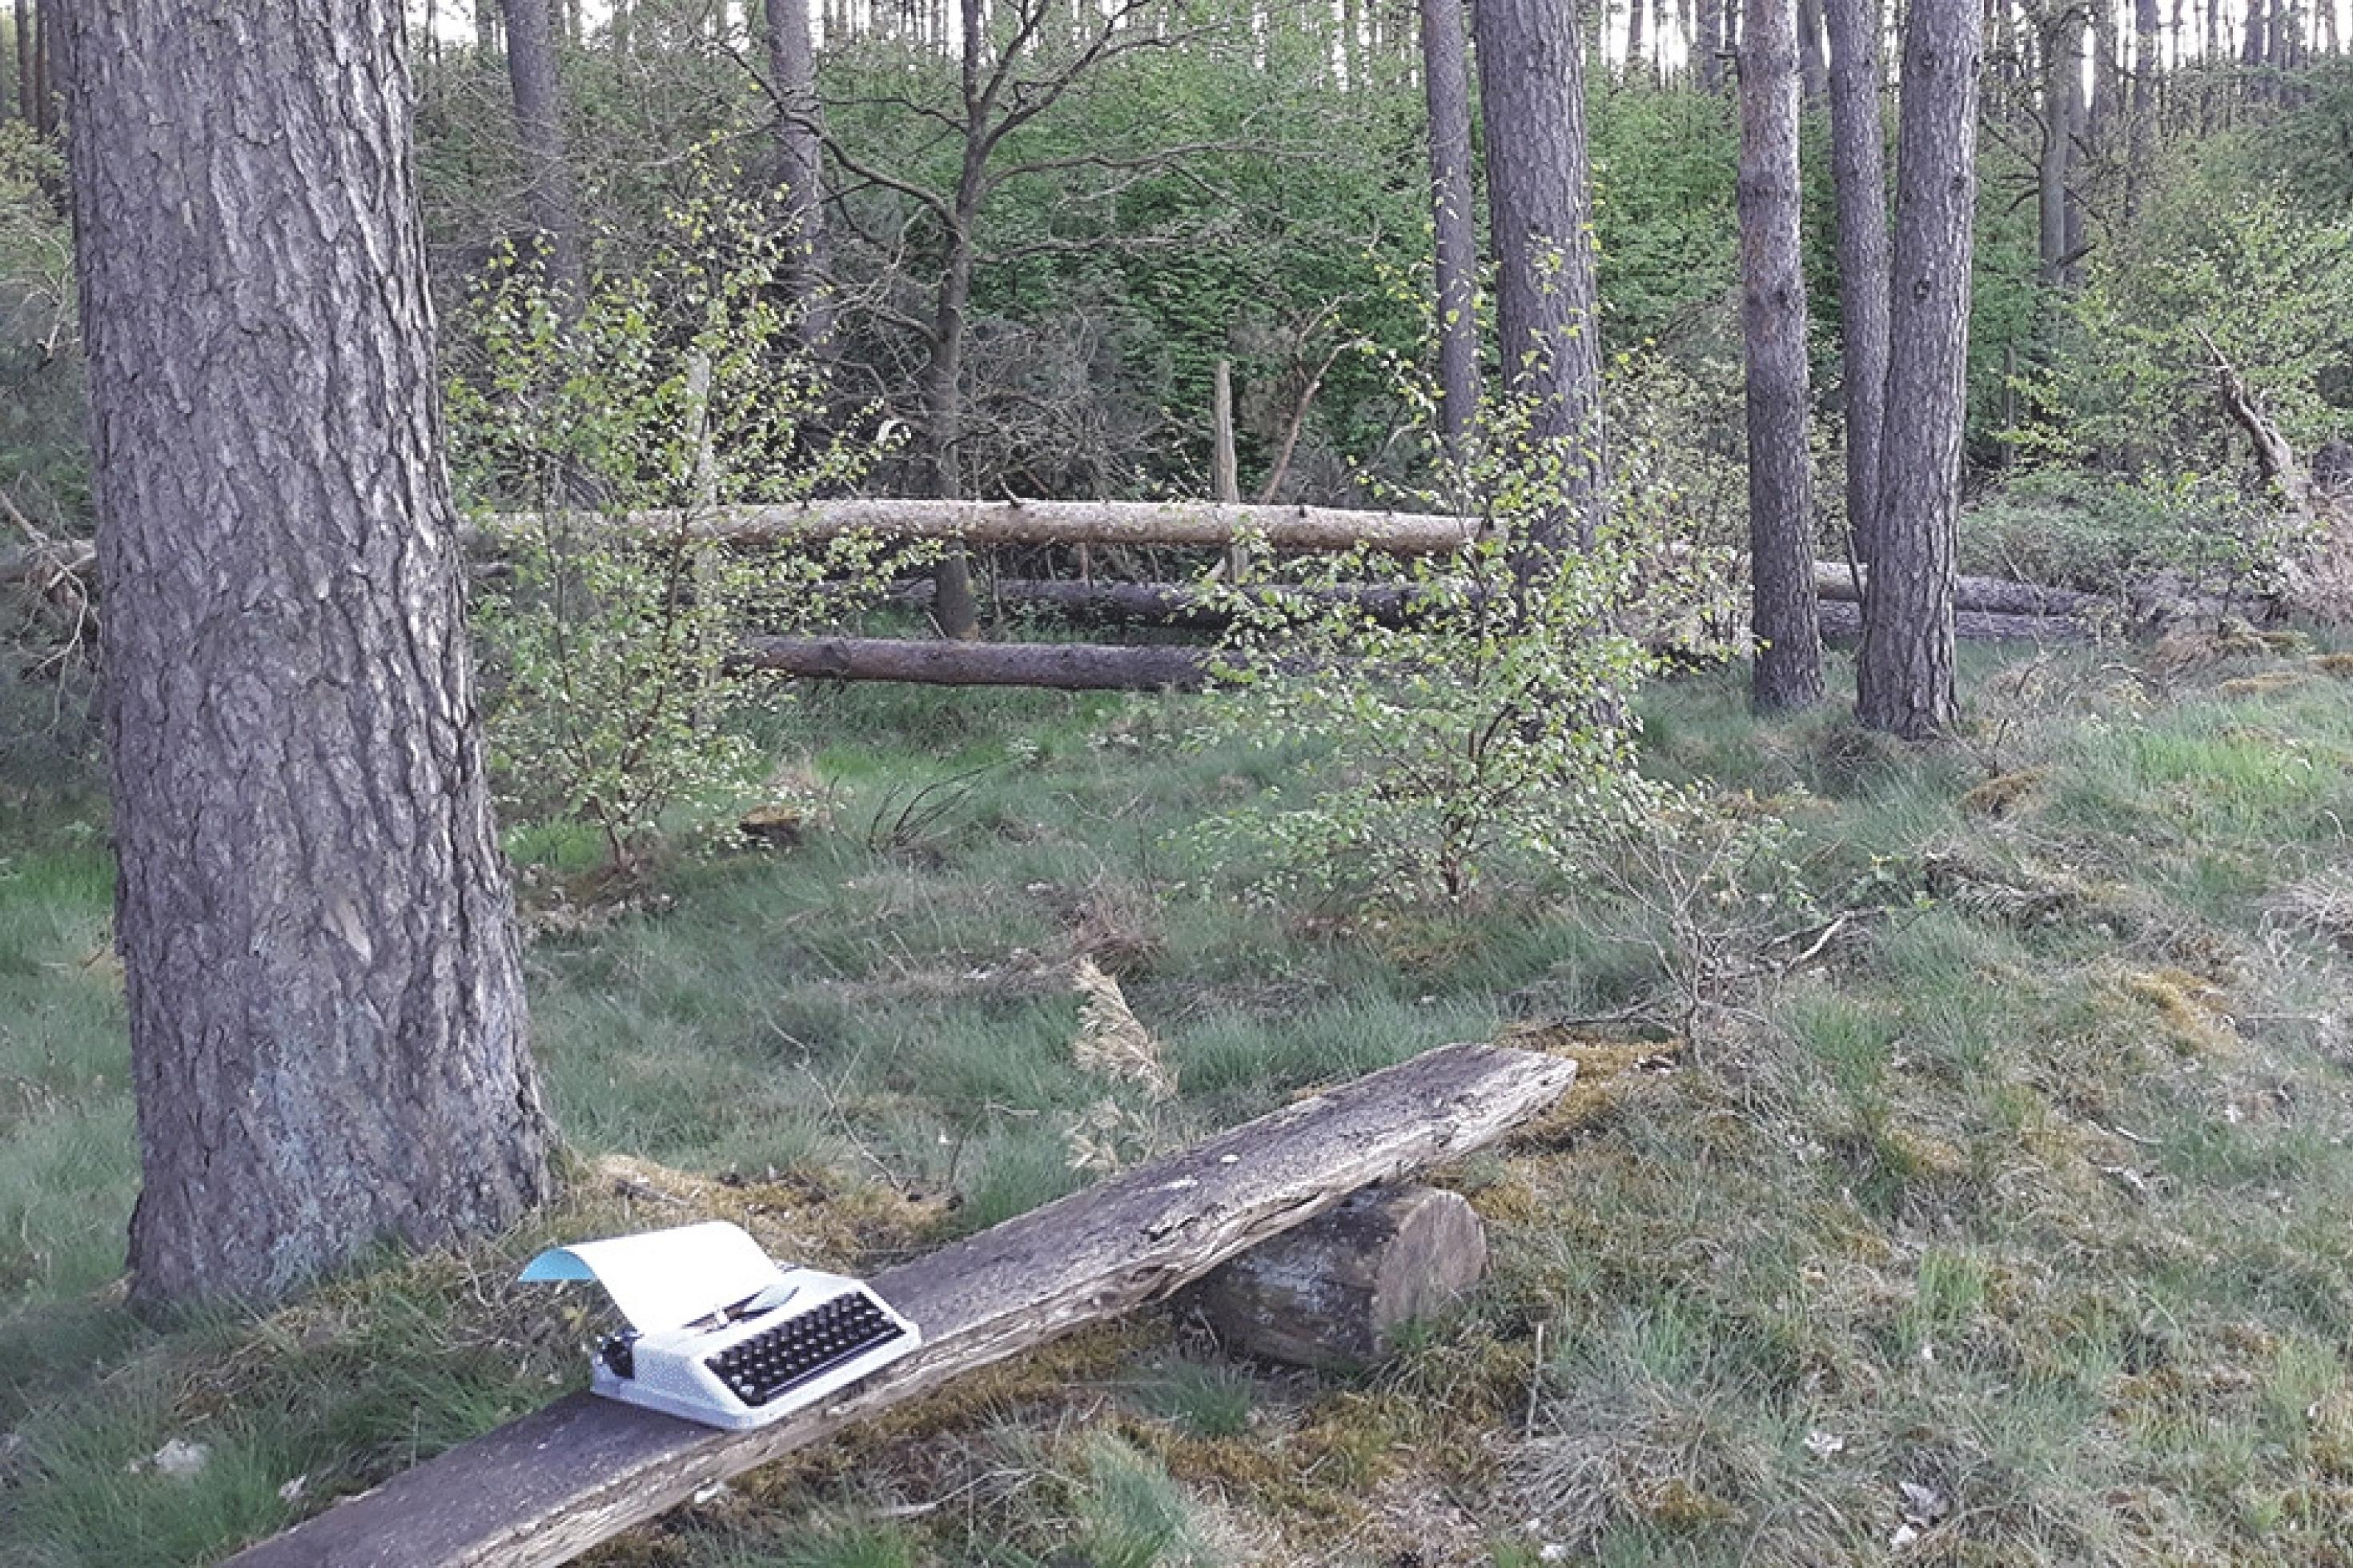 Links unten im Bild steht eine Schreibmaschine auf einer Holzbank in einem Mischwald. Es ist ein Blatt Papier eingezogen.